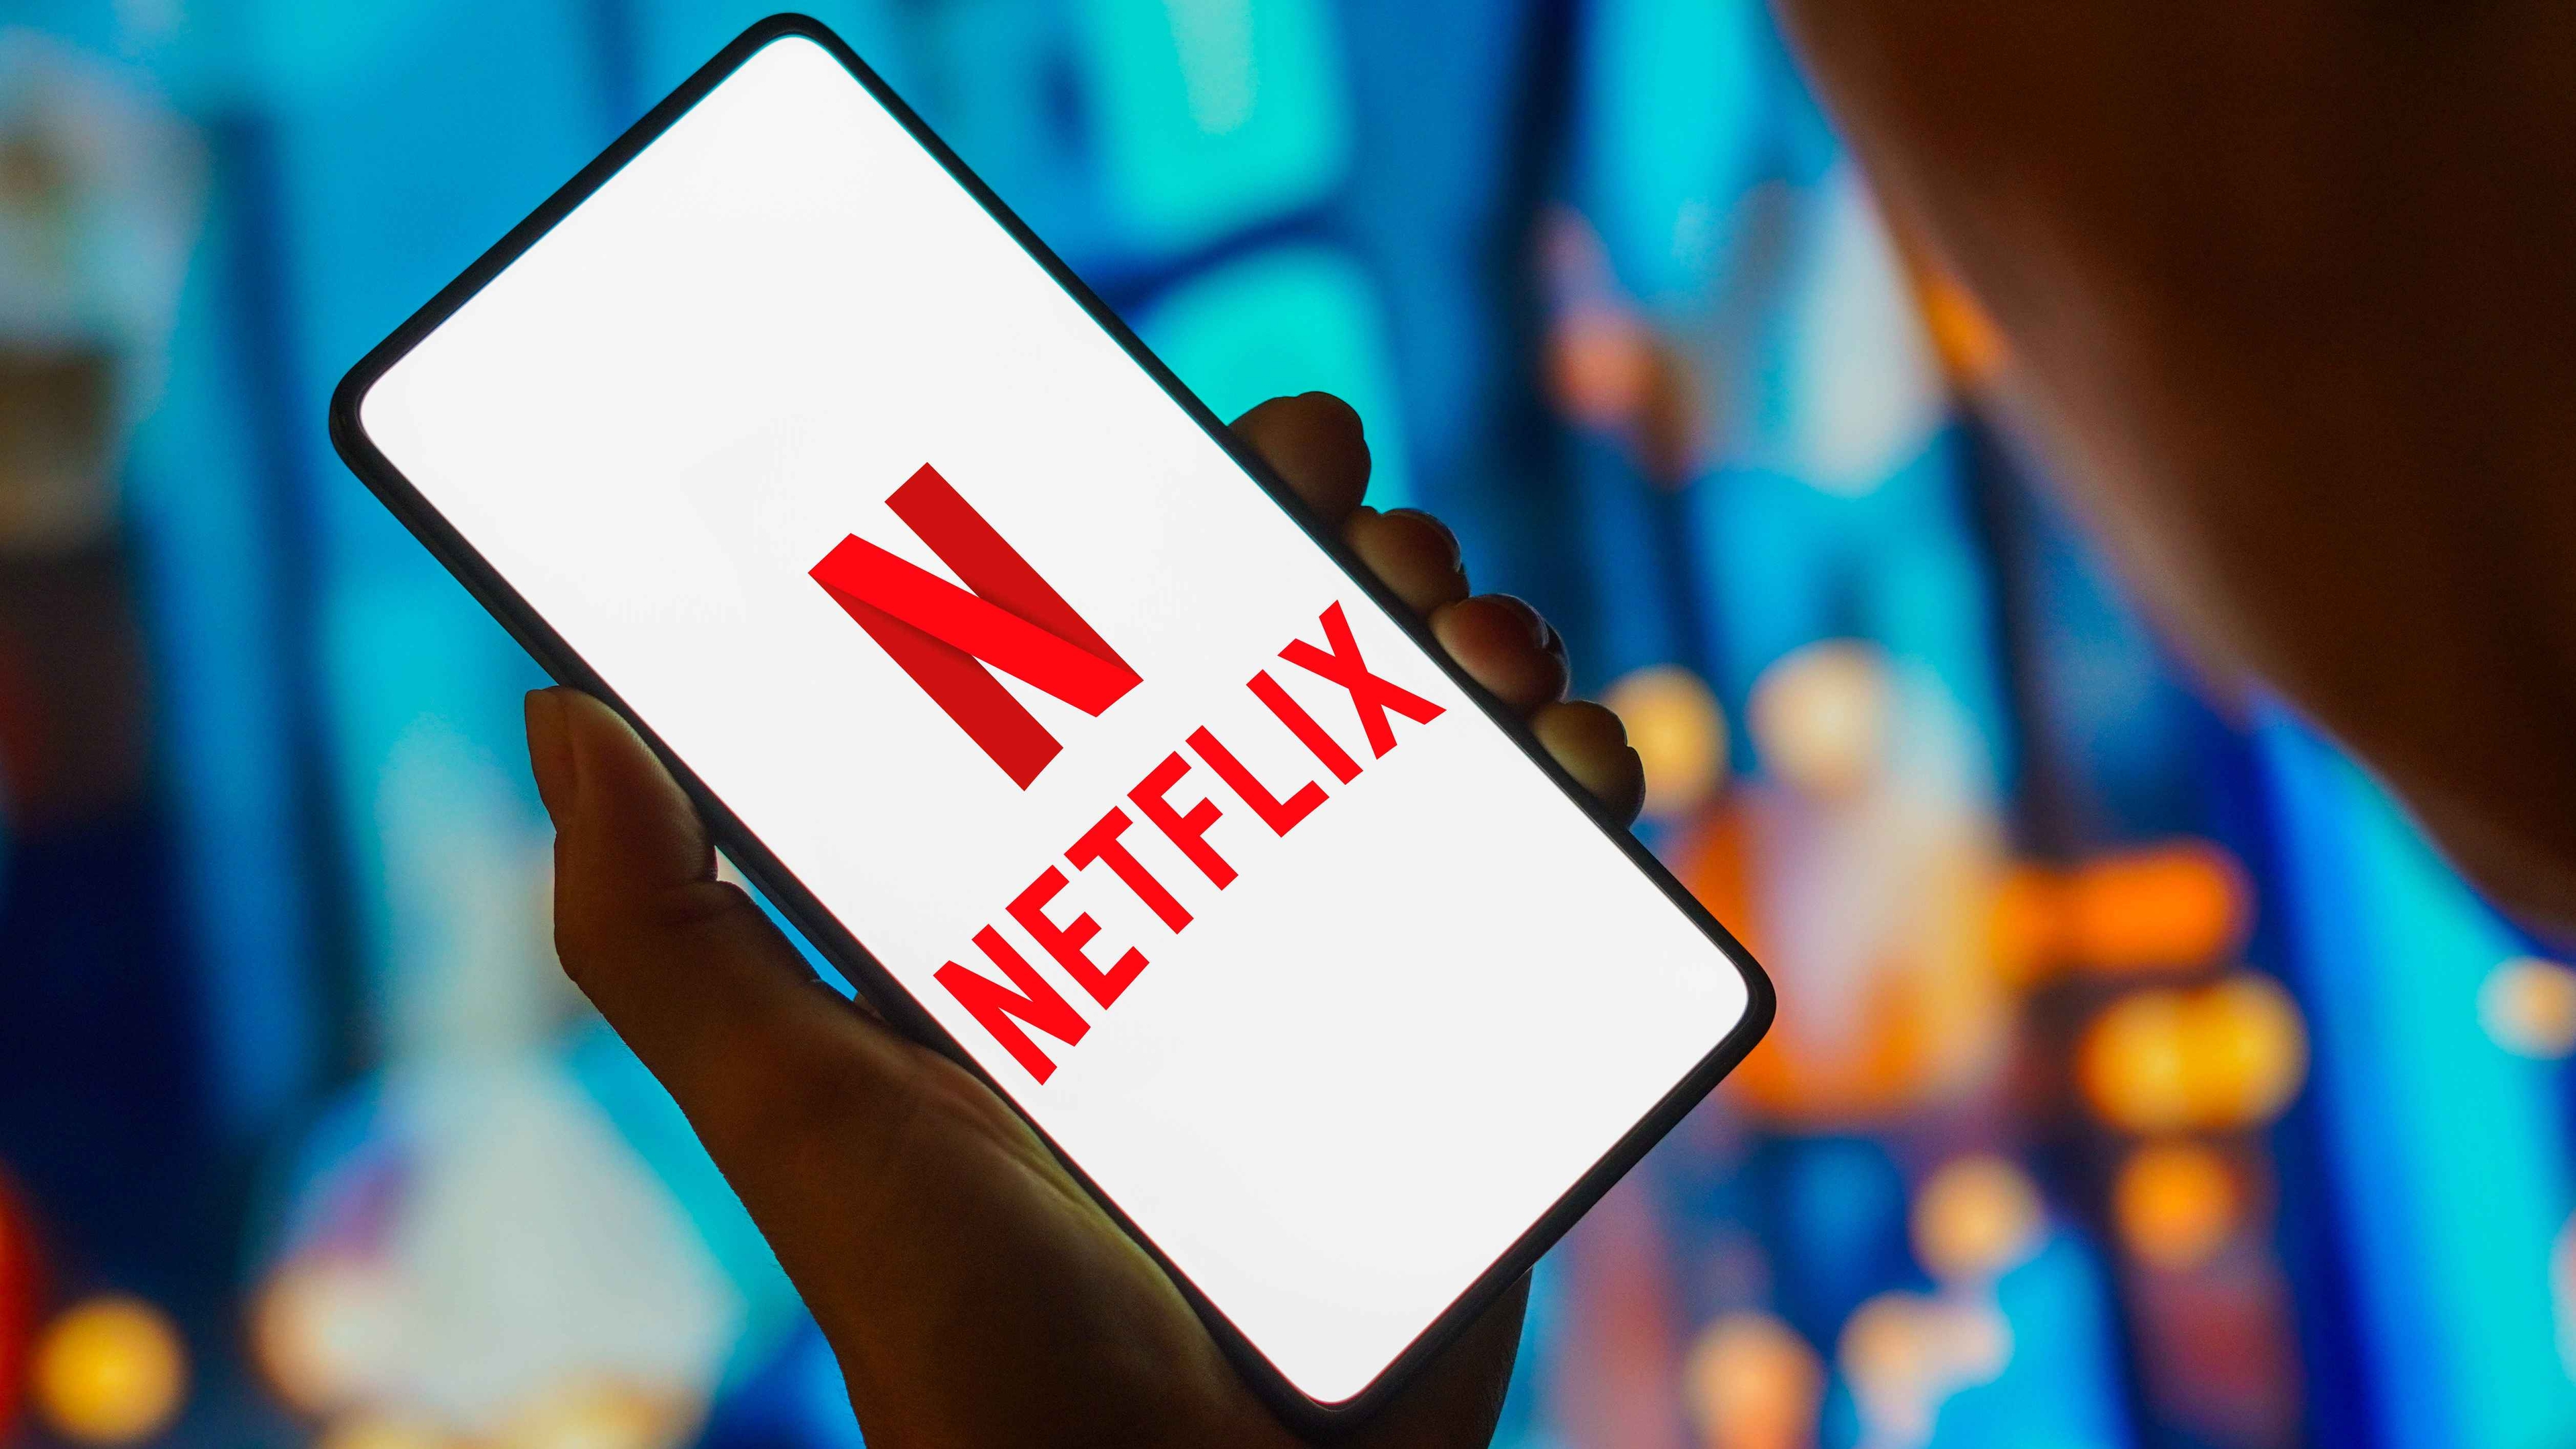 Crossmedia gewinnt Etat des Streamimgdienstes Netflix